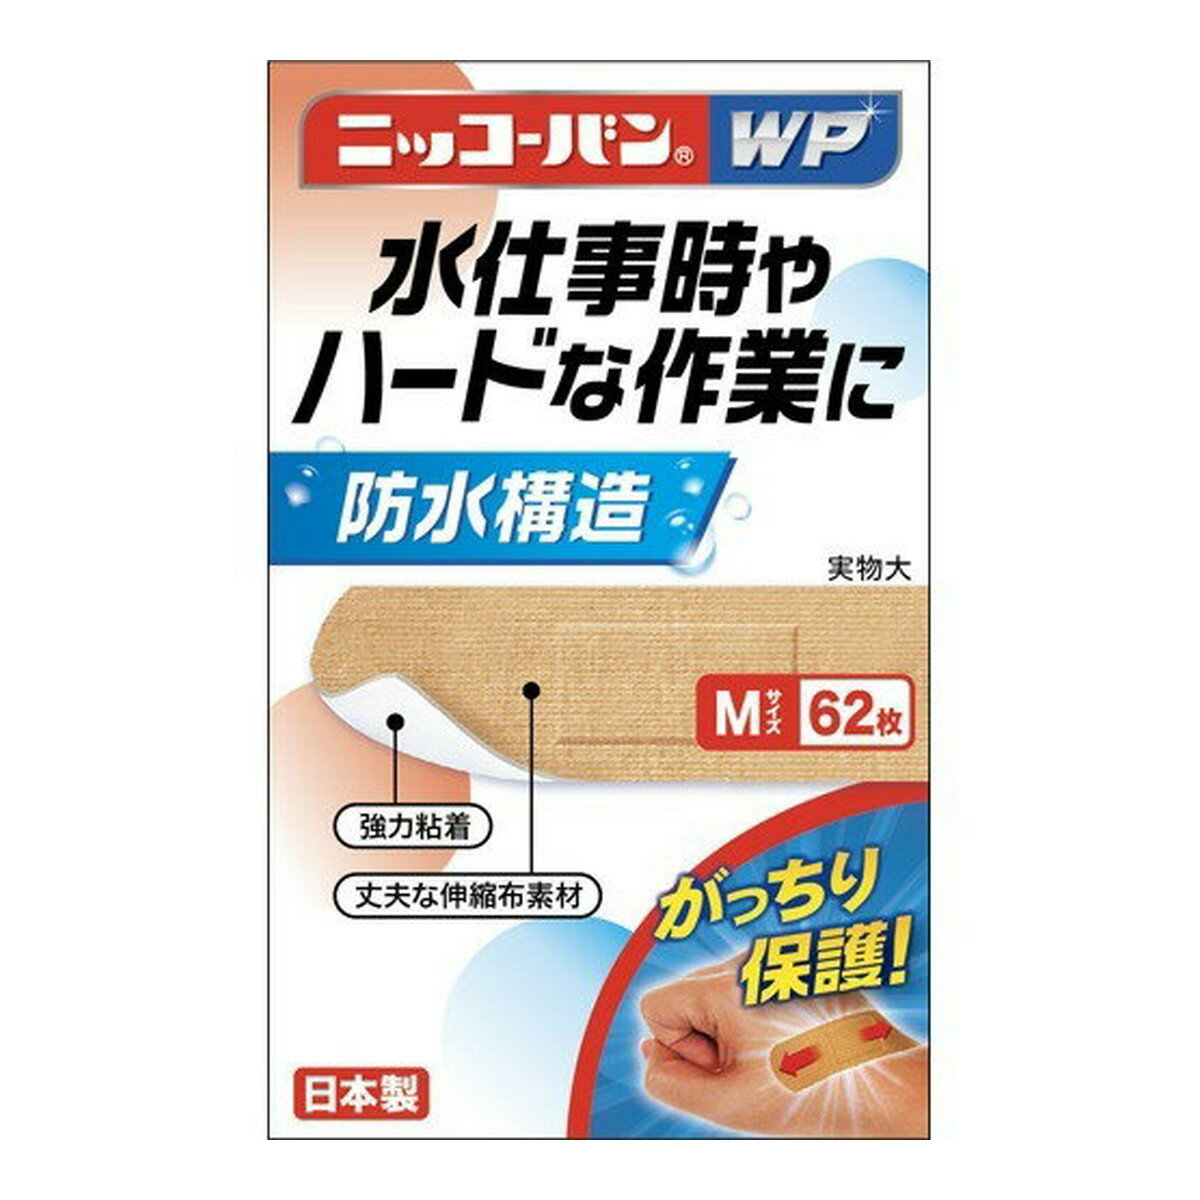 【サマーセール】日廣薬品 ニッコーバンWP No.505 Mサイズ 62枚入